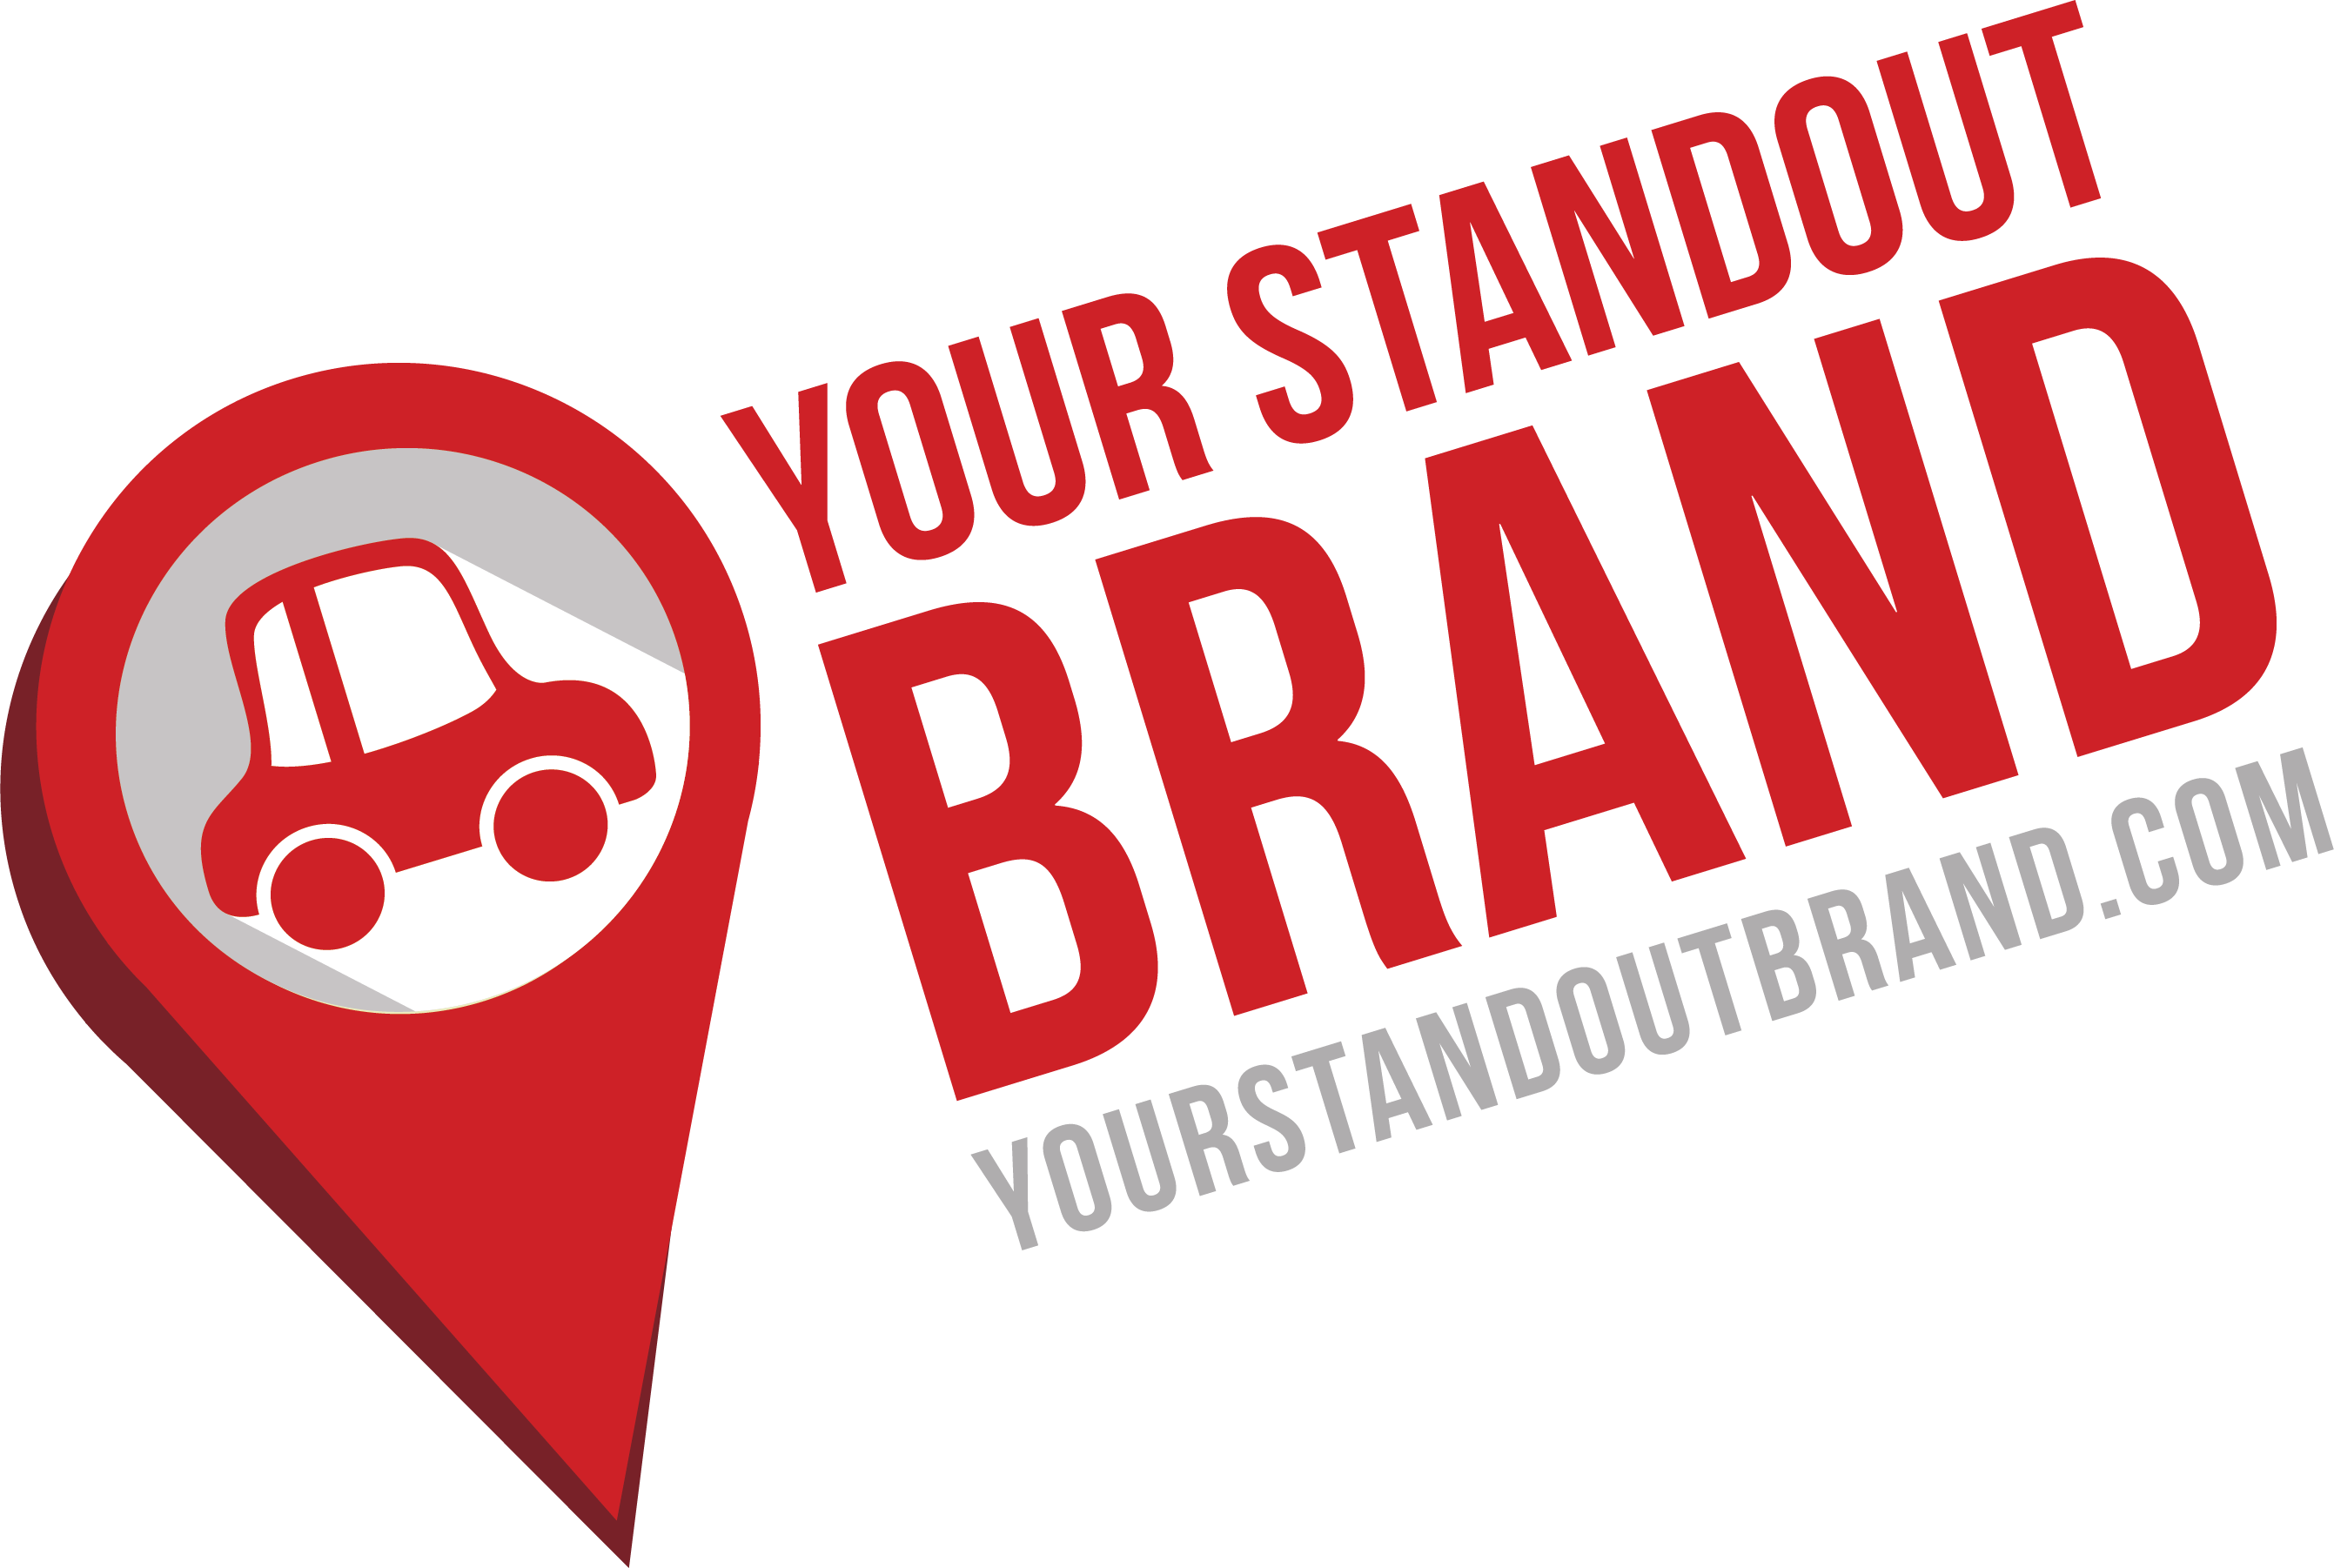 YSB-Logo - Car Pin and Text Badge